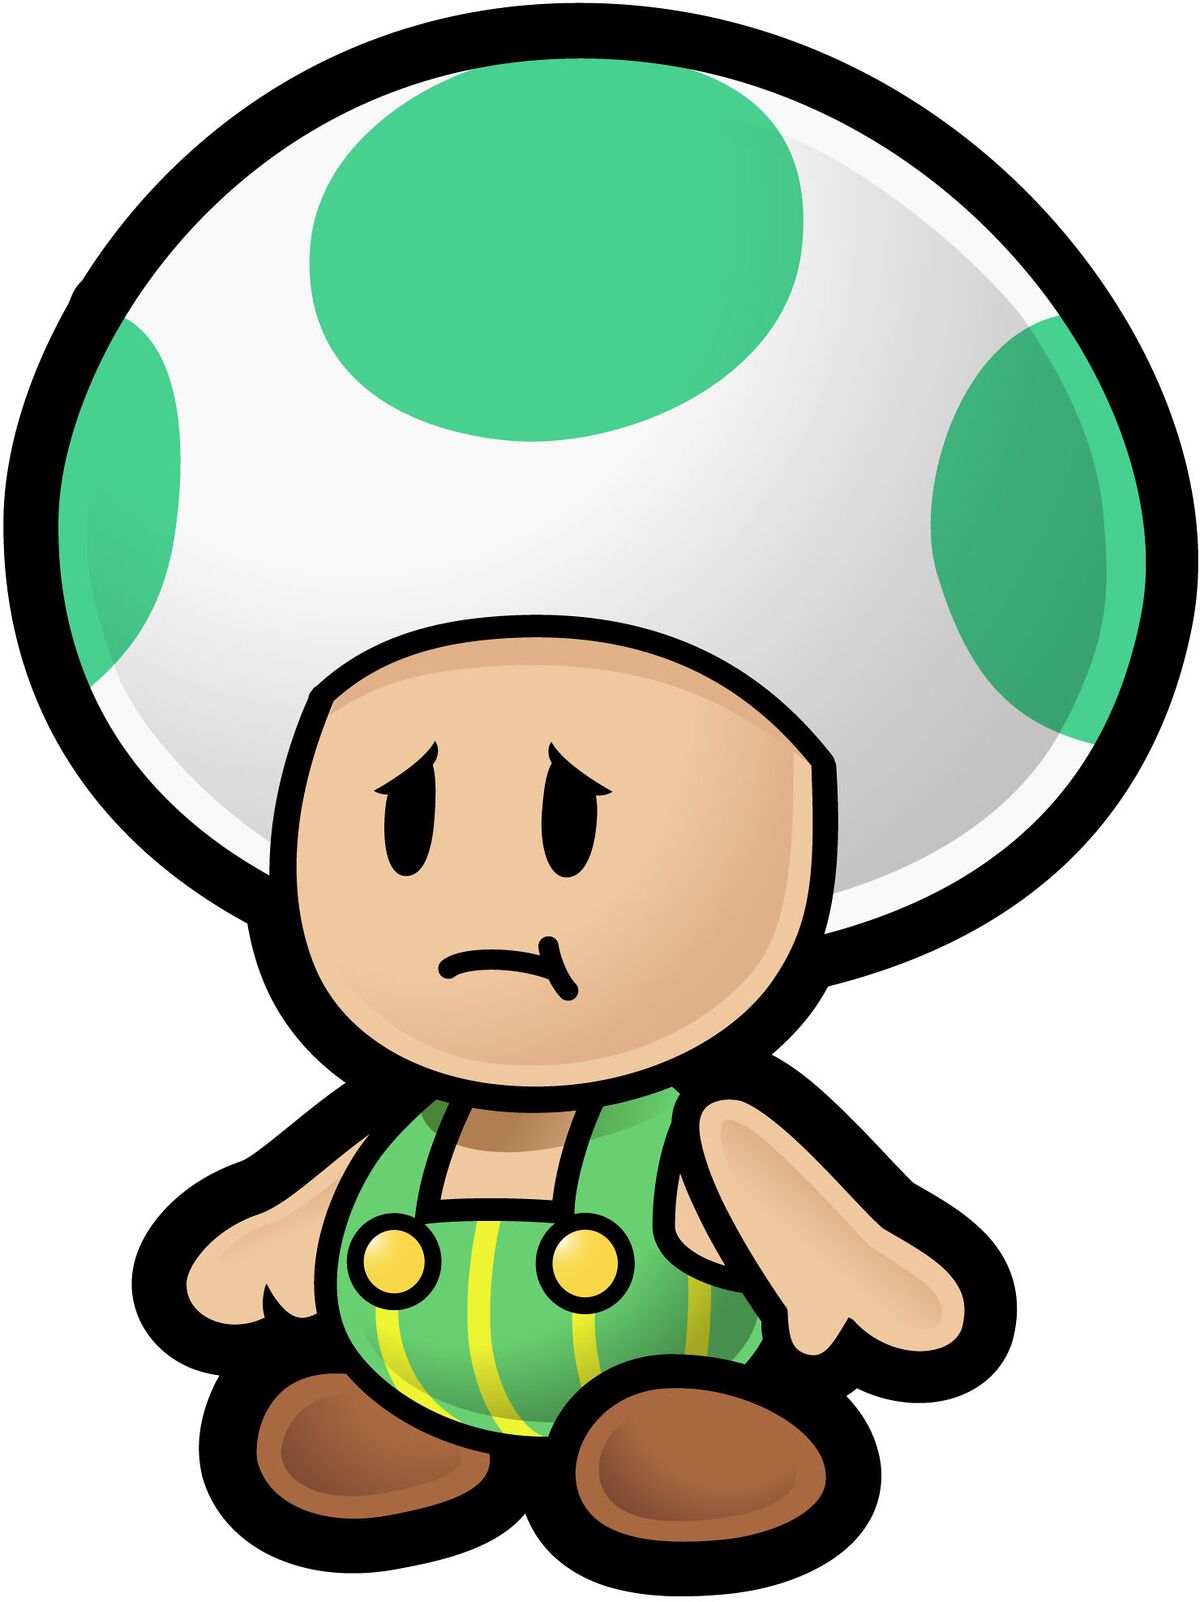 Toad (species) - Super Mario Wiki, the Mario encyclopedia